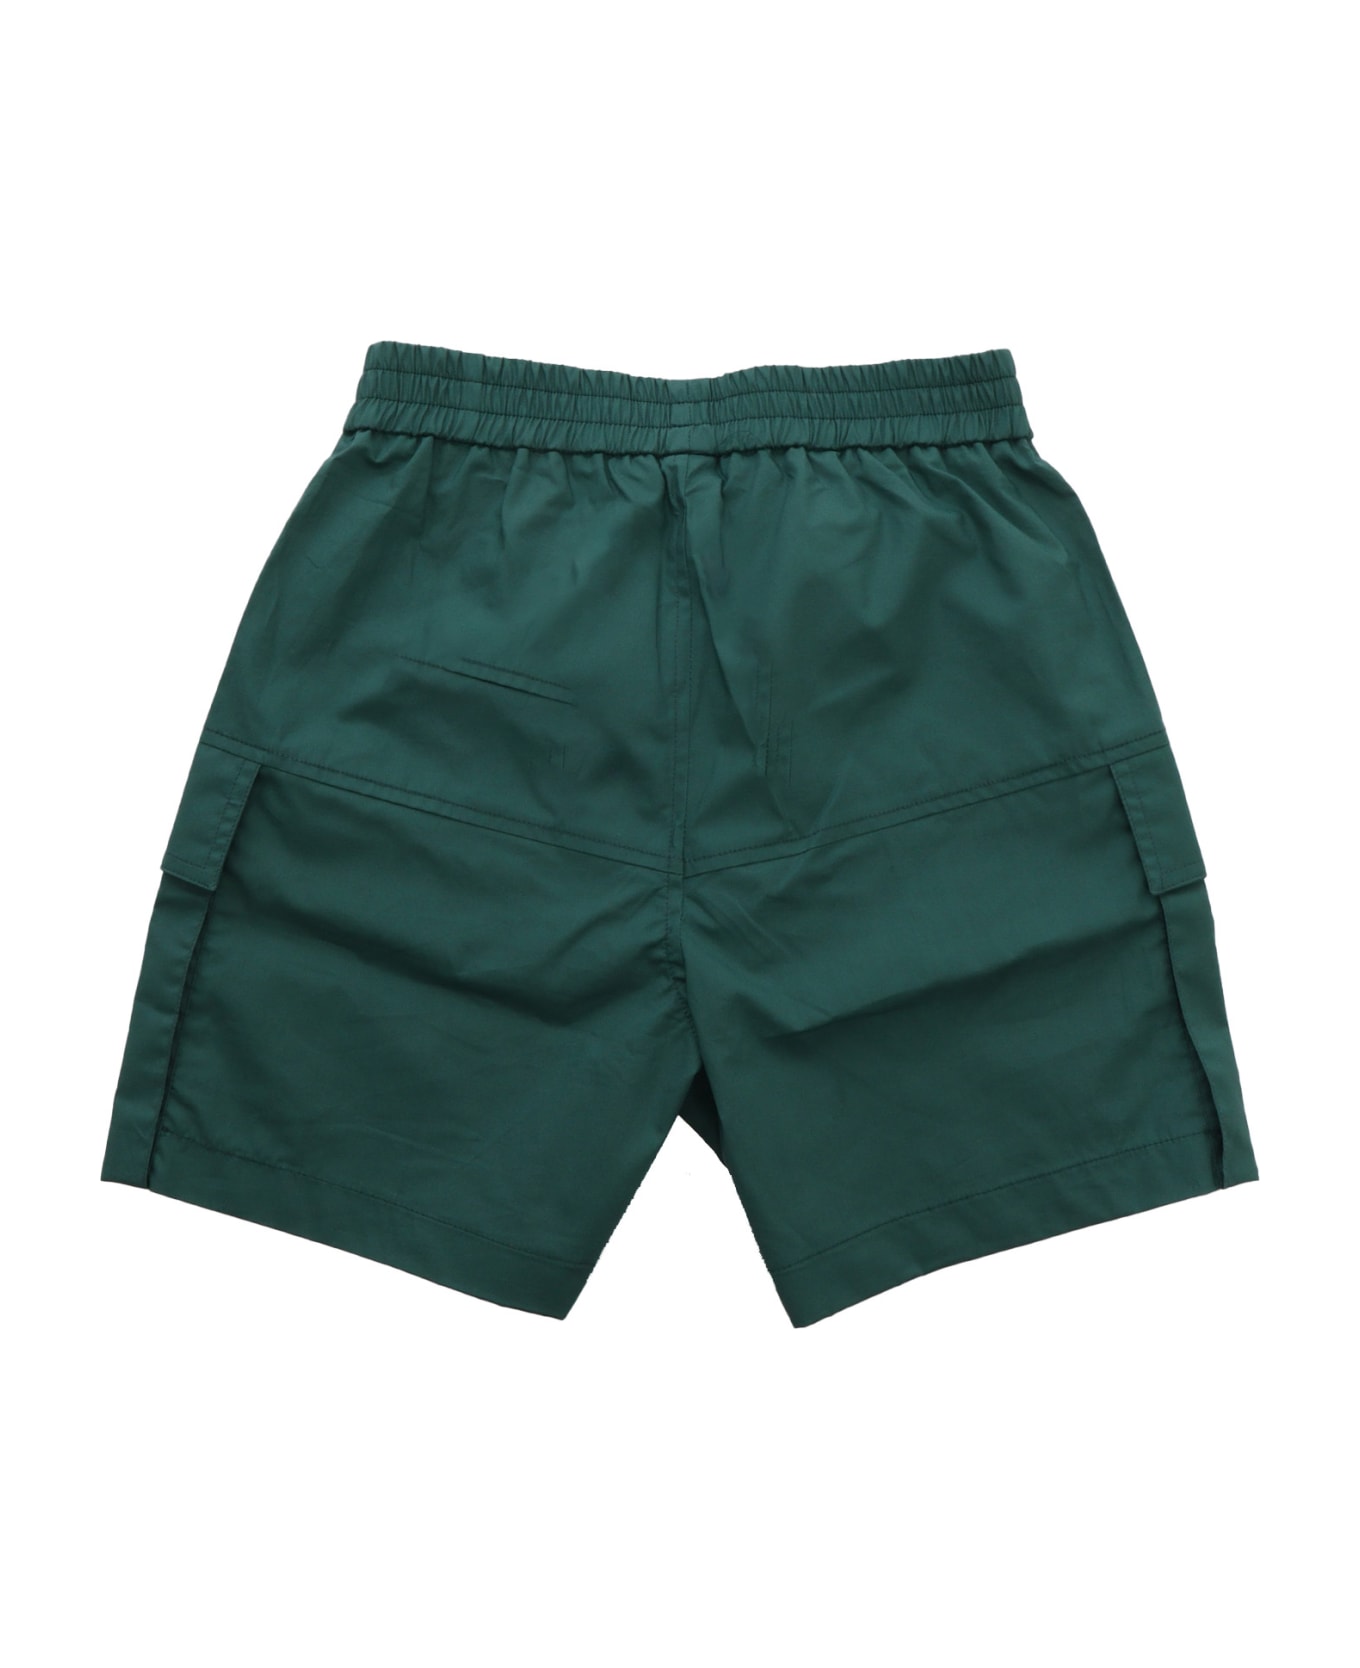 Monnalisa Green Cargo Shorts - GREEN ボトムス